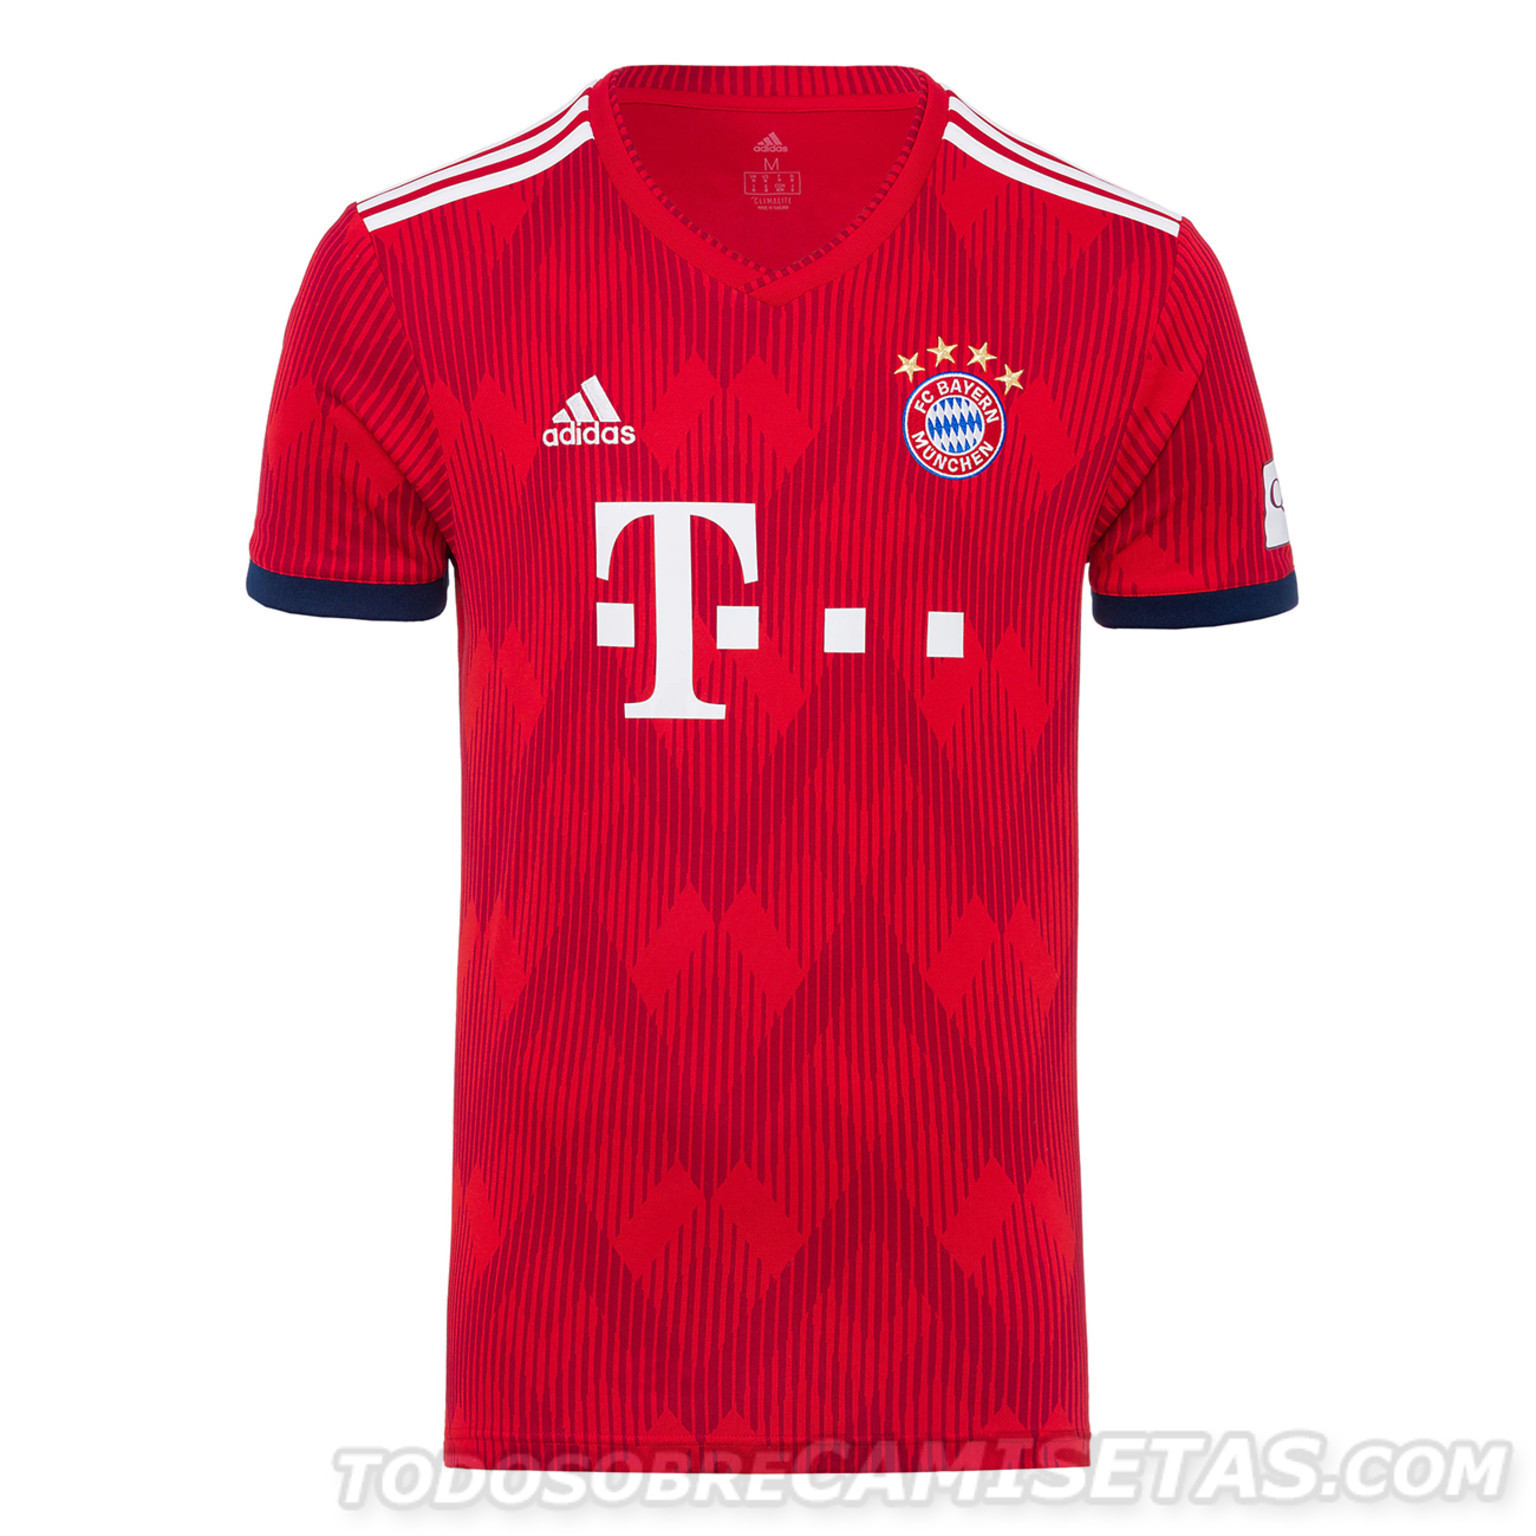 Bayern-Munich-2018-19-adidas-new-home-kit-6.jpg